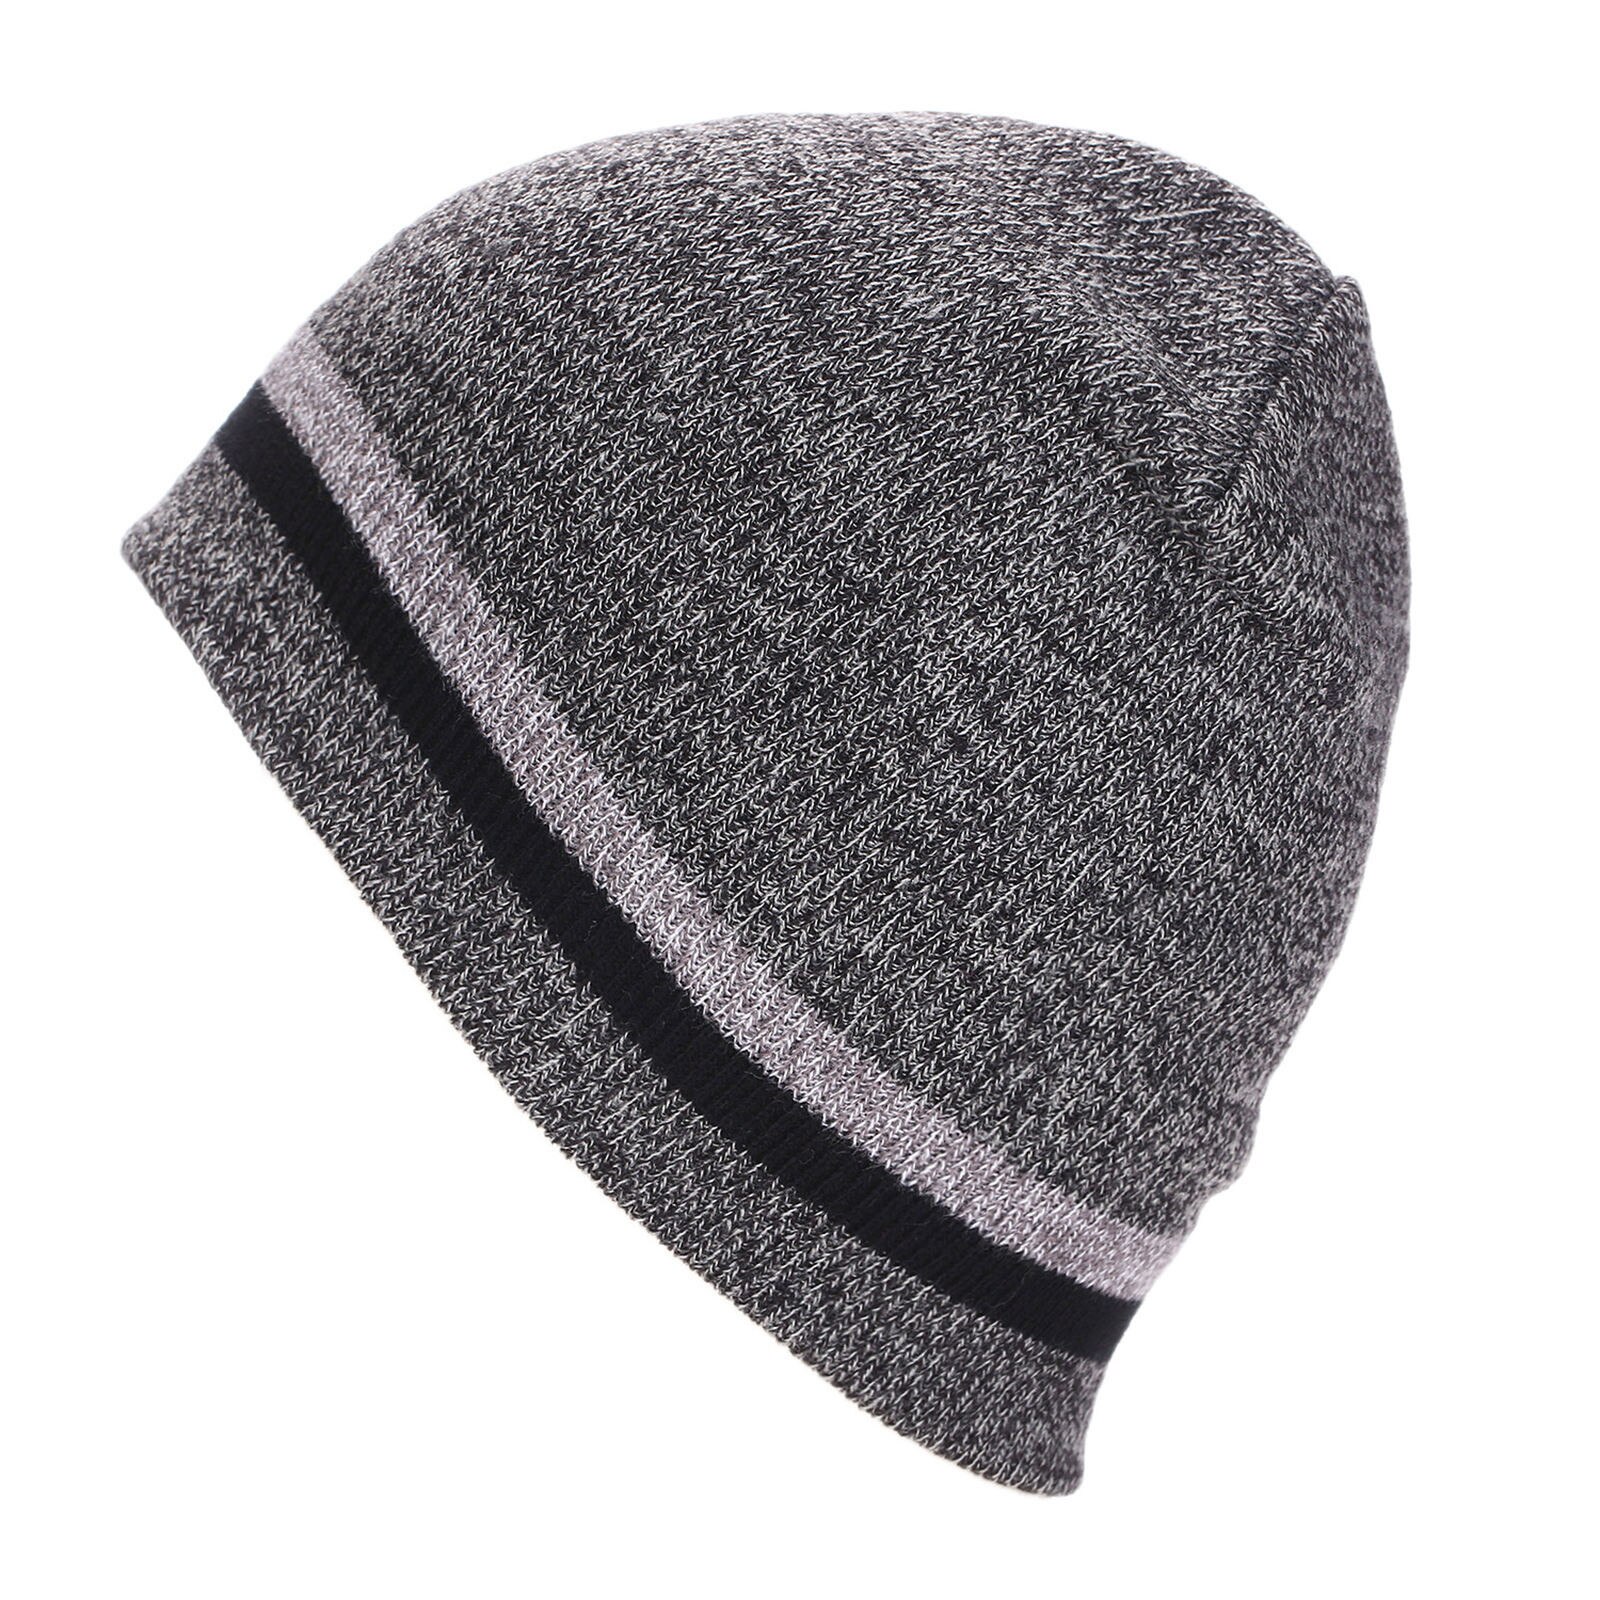 E cappello invernale alla moda cappello di lana lavorato a maglia paraorecchie spesse sci all'aperto ciclismo cappello caldo dolce E adorabile, caldo confortevole: GY